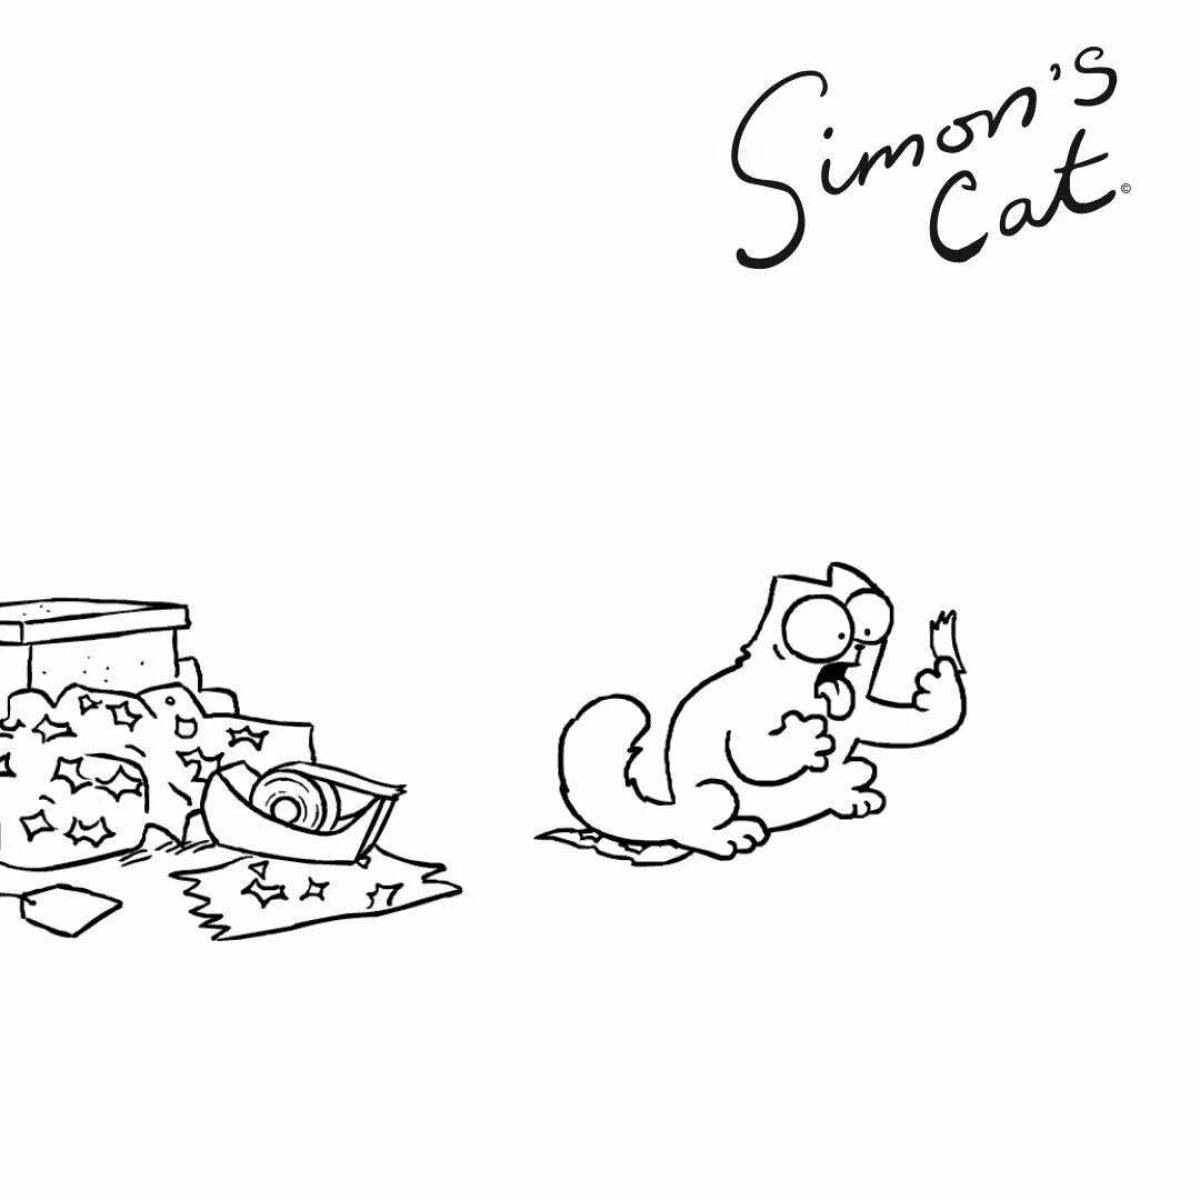 Simon's fun coloring book